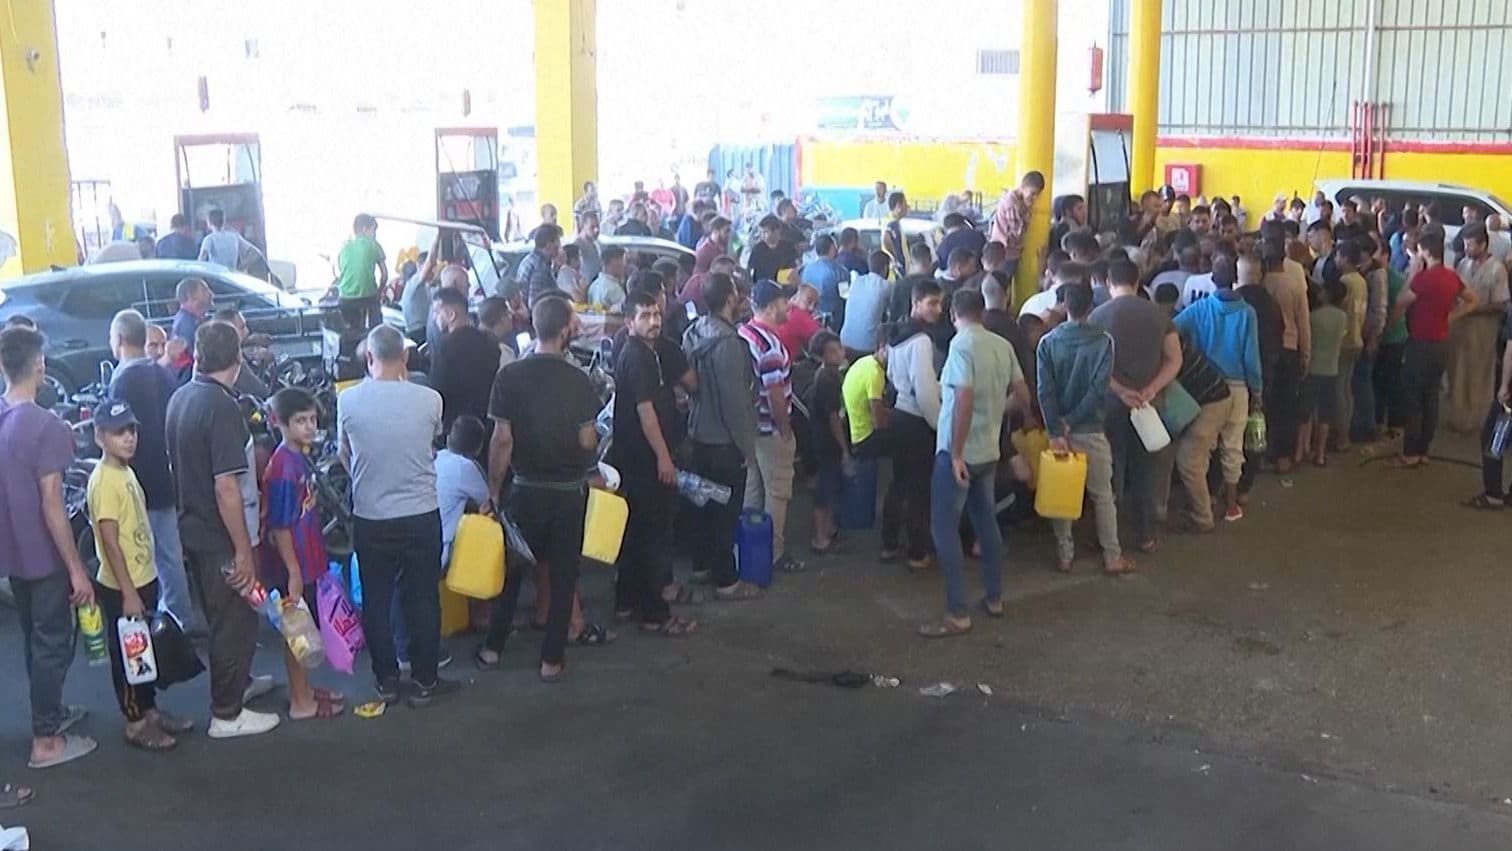 Fuel shortage in Palestine